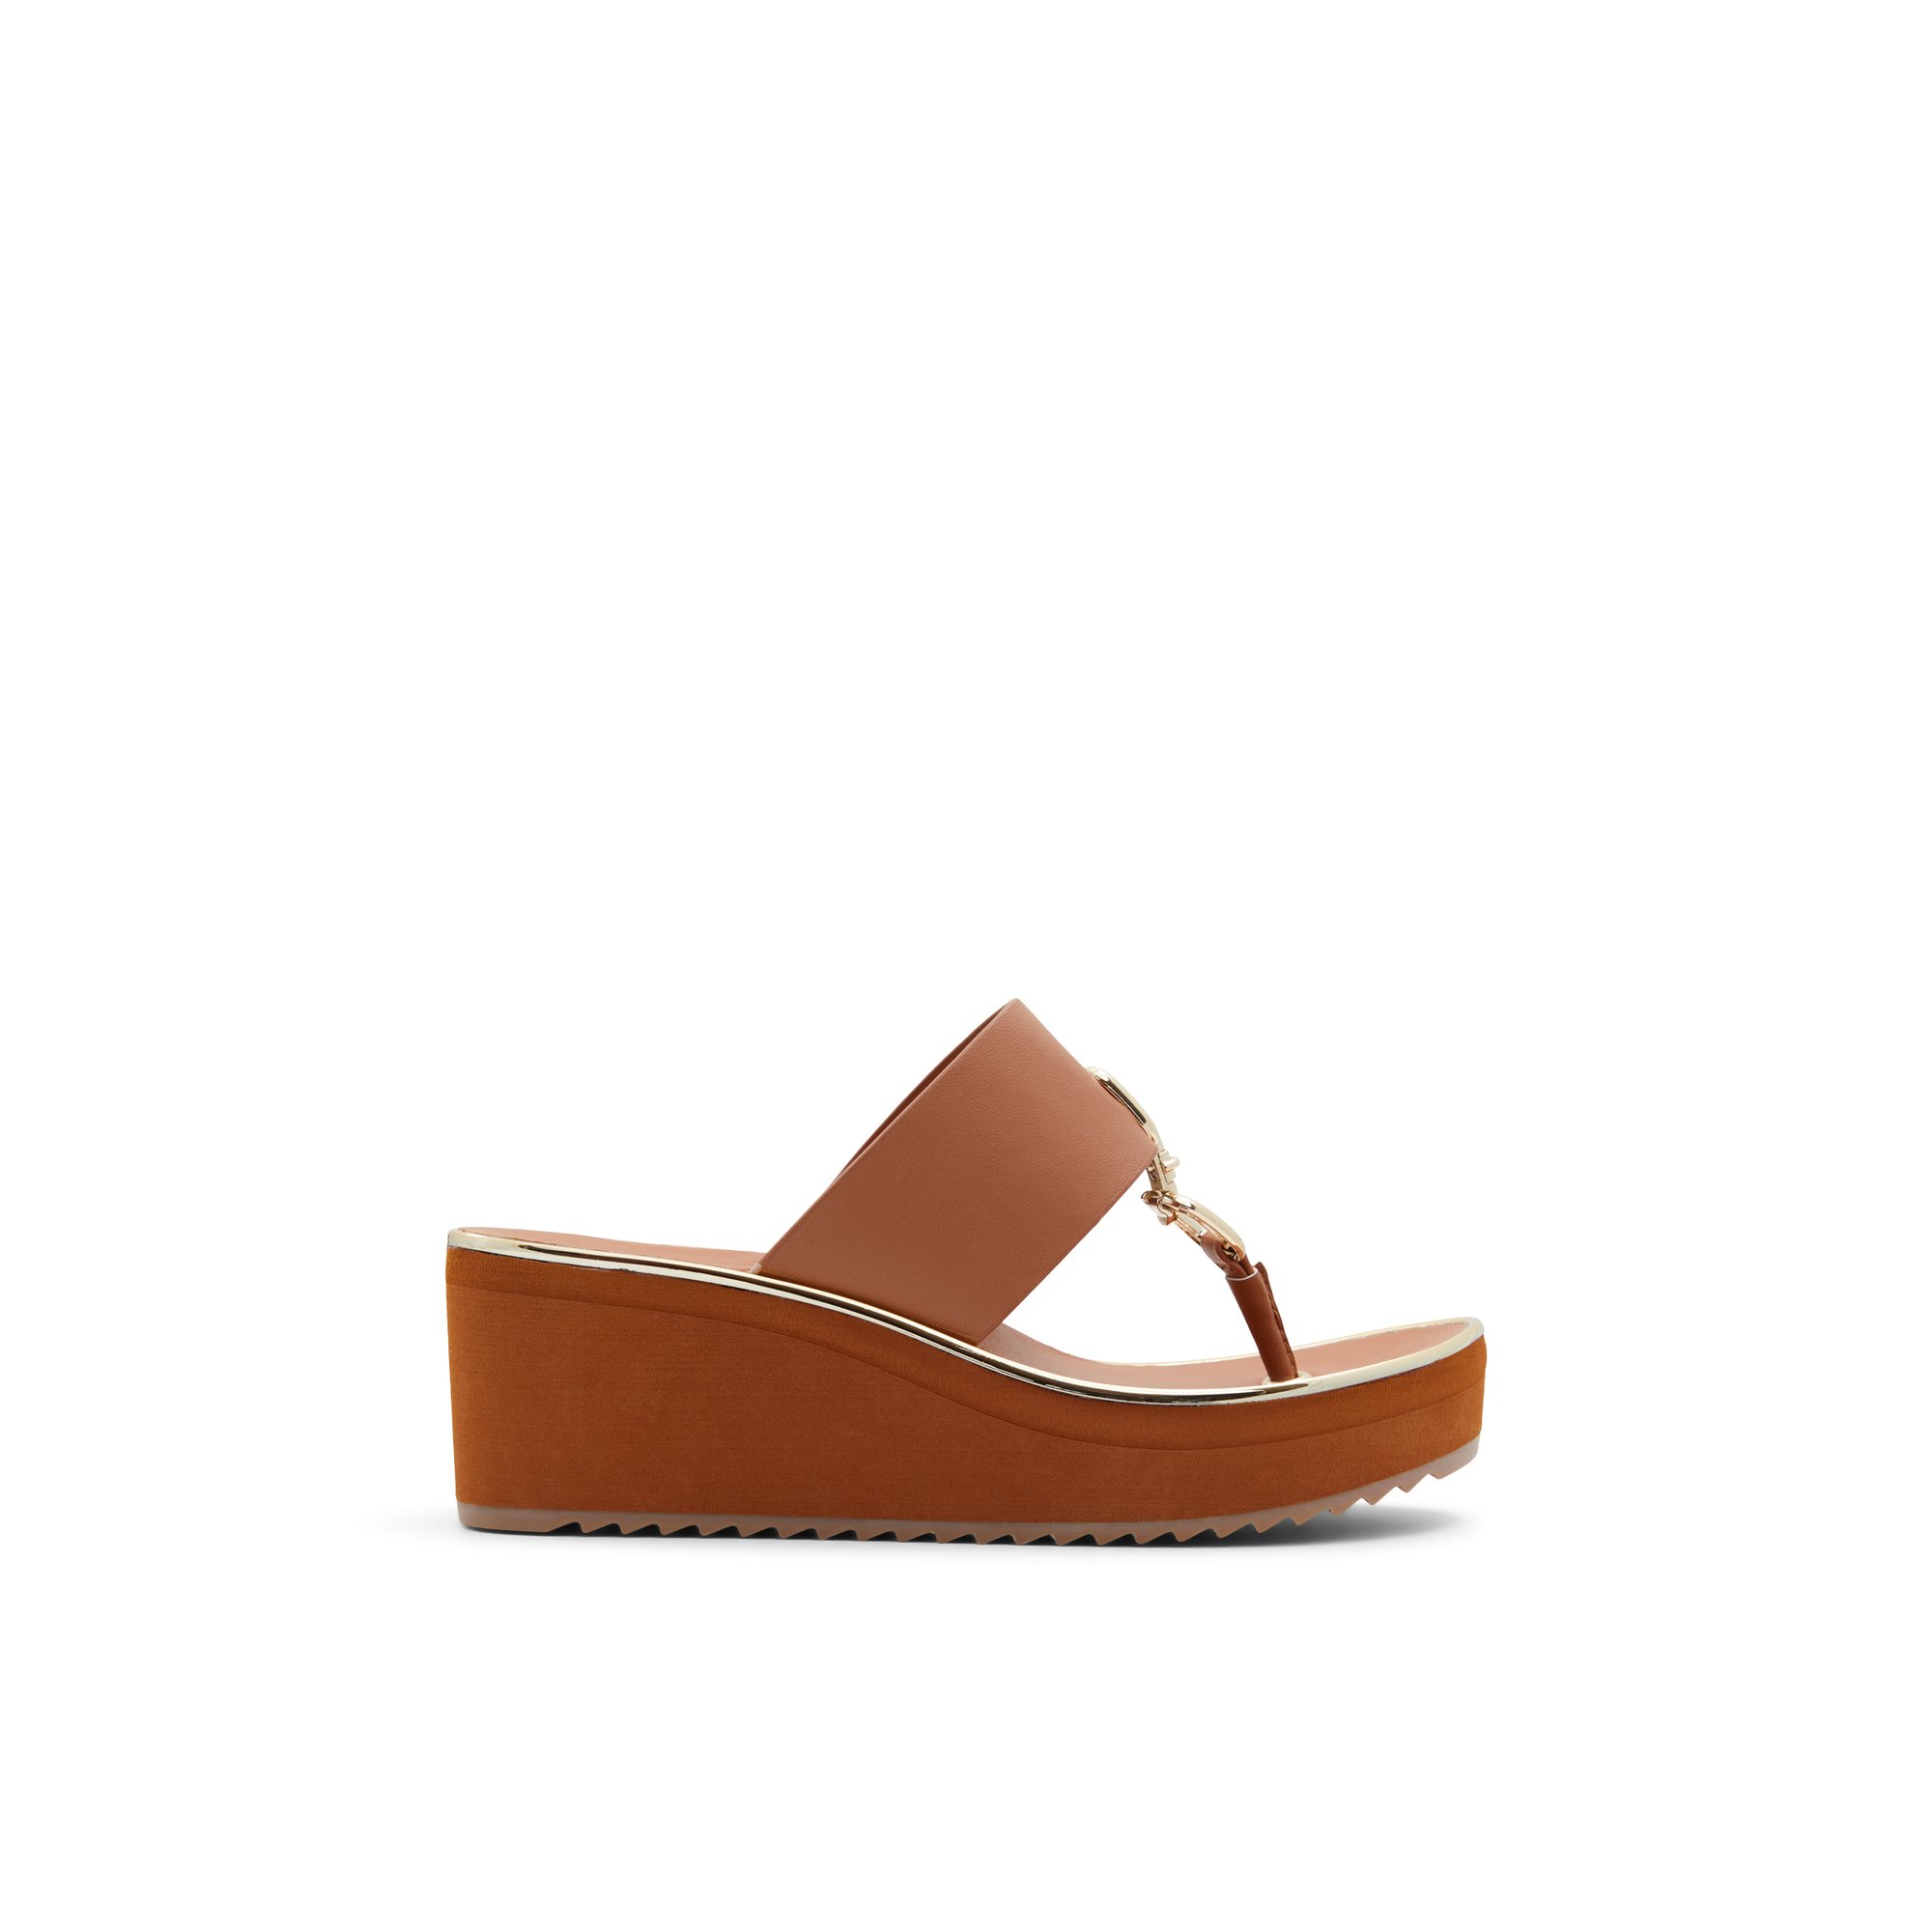 ALDO Maesllan - Women's Sandals Wedges - Brown